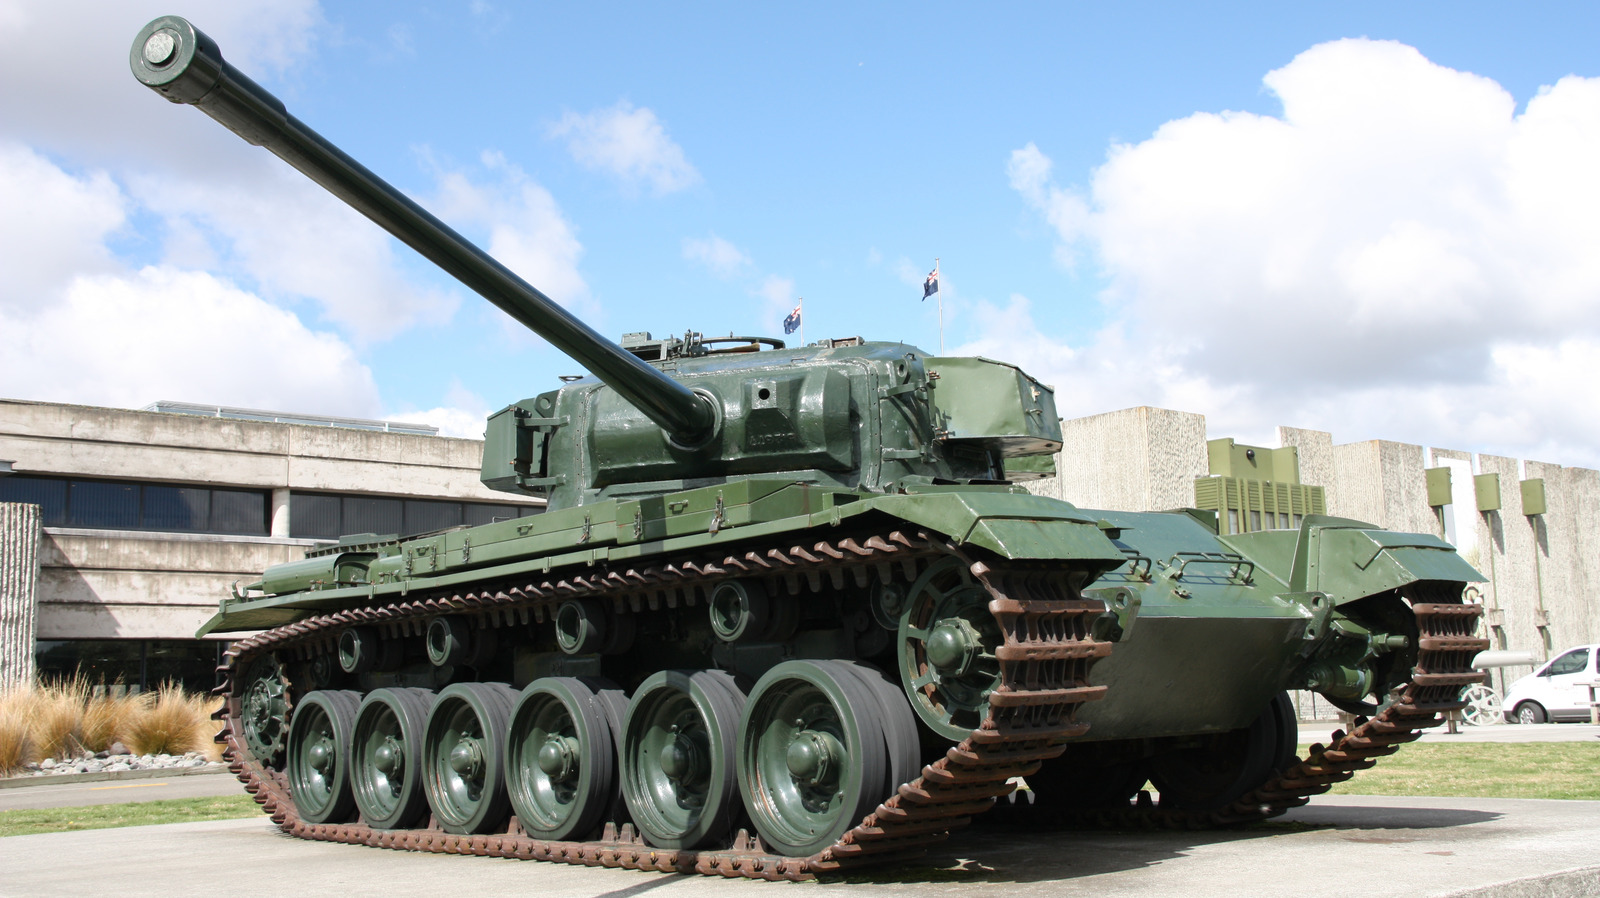 Esto es lo que convirtió al Centurion en uno de los tanques más importantes de la historia de los AFV británicos